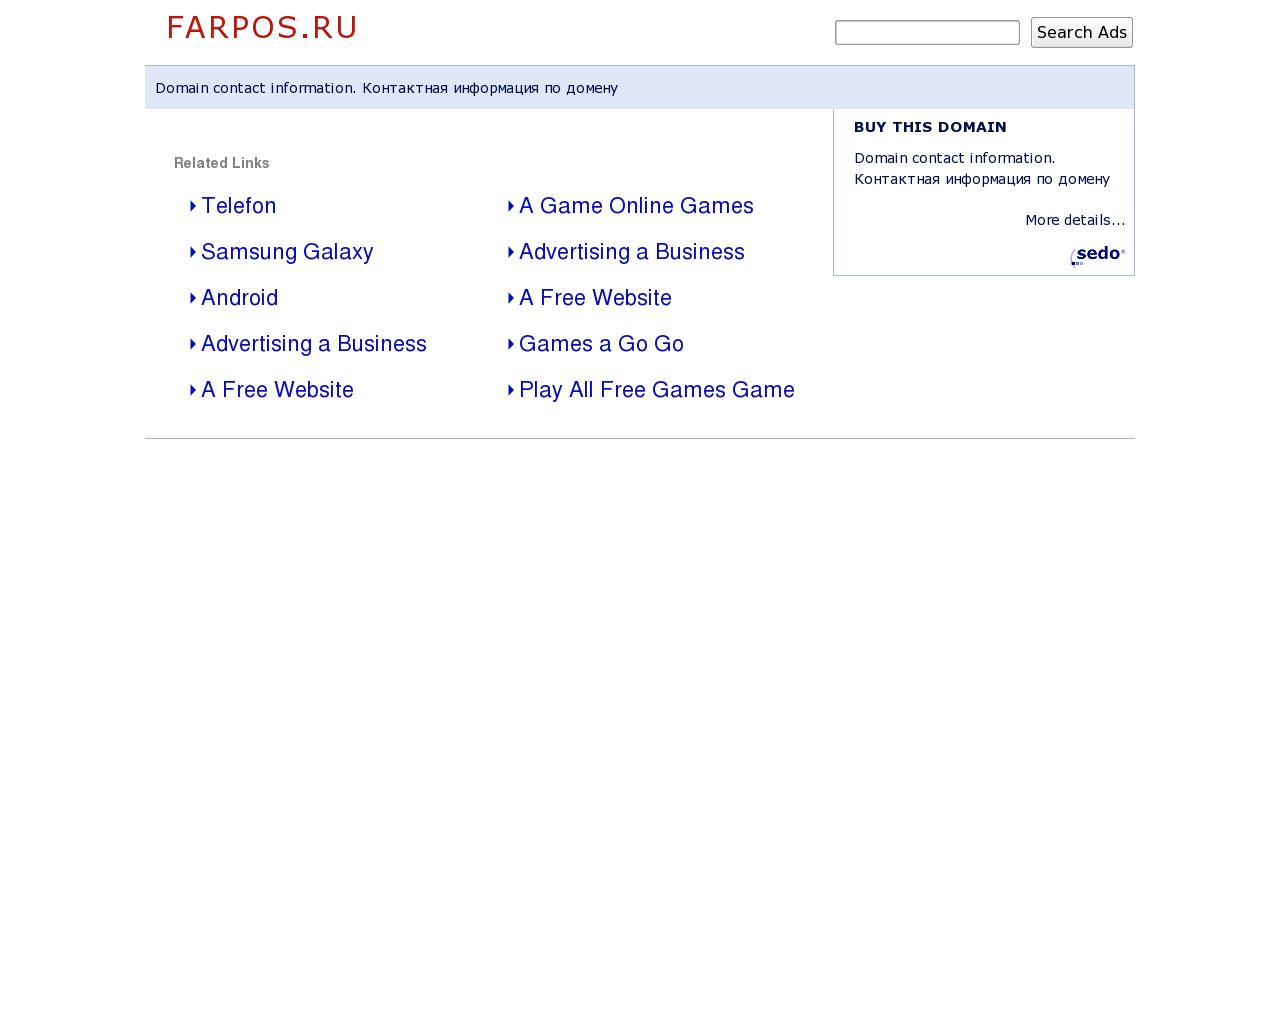 Изображение сайта farpos.ru в разрешении 1280x1024